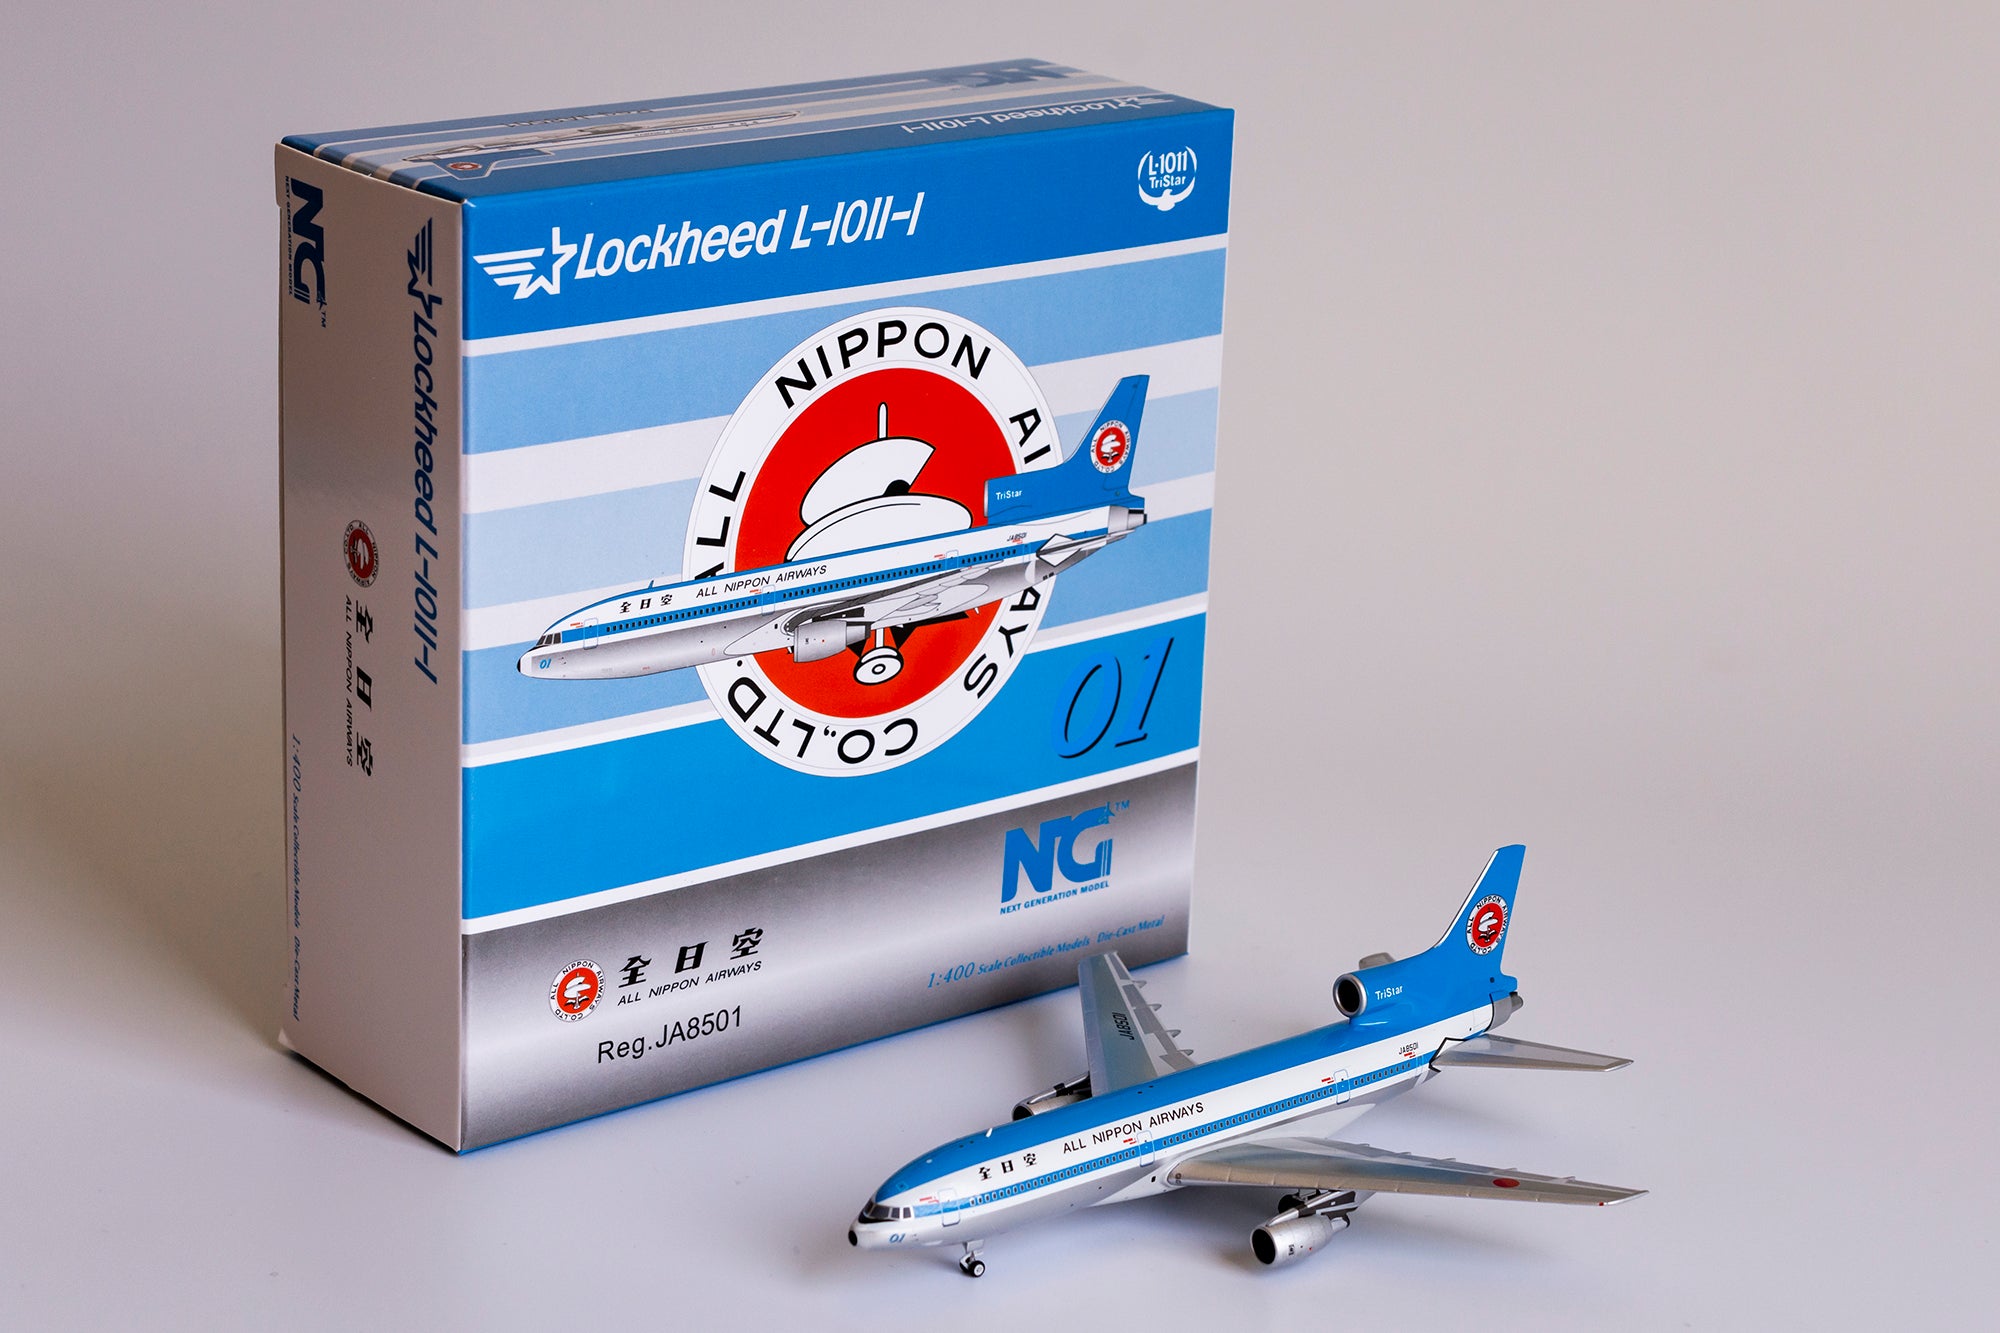 1:400 NG Models All Nippon Airways (ANA) Lockheed L-1011-1